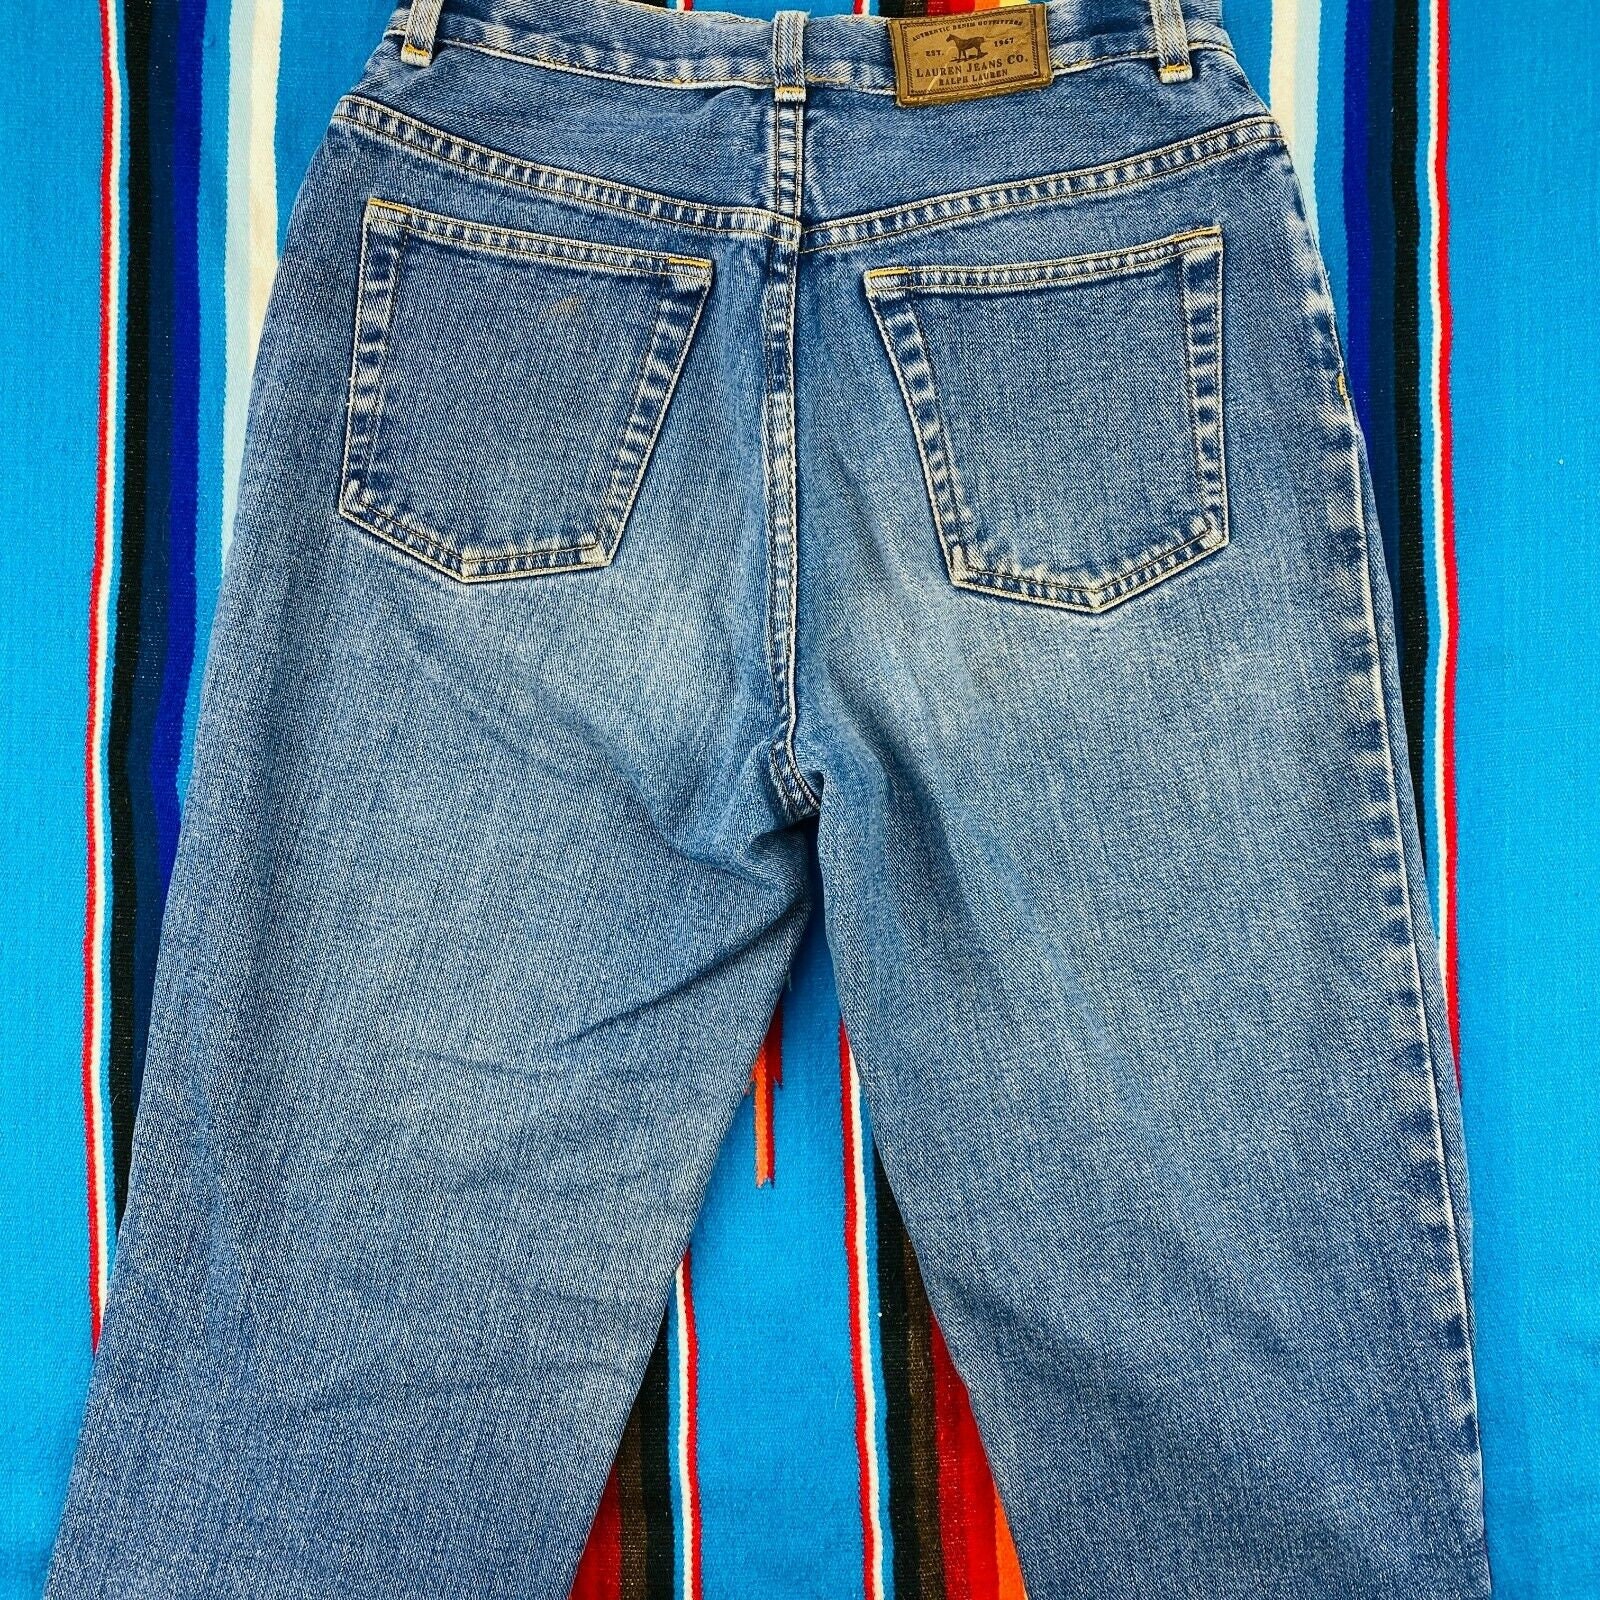 Ralph Lauren Jeans Co Women's Jeans Vintage 90s Size 4 Mid | Etsy